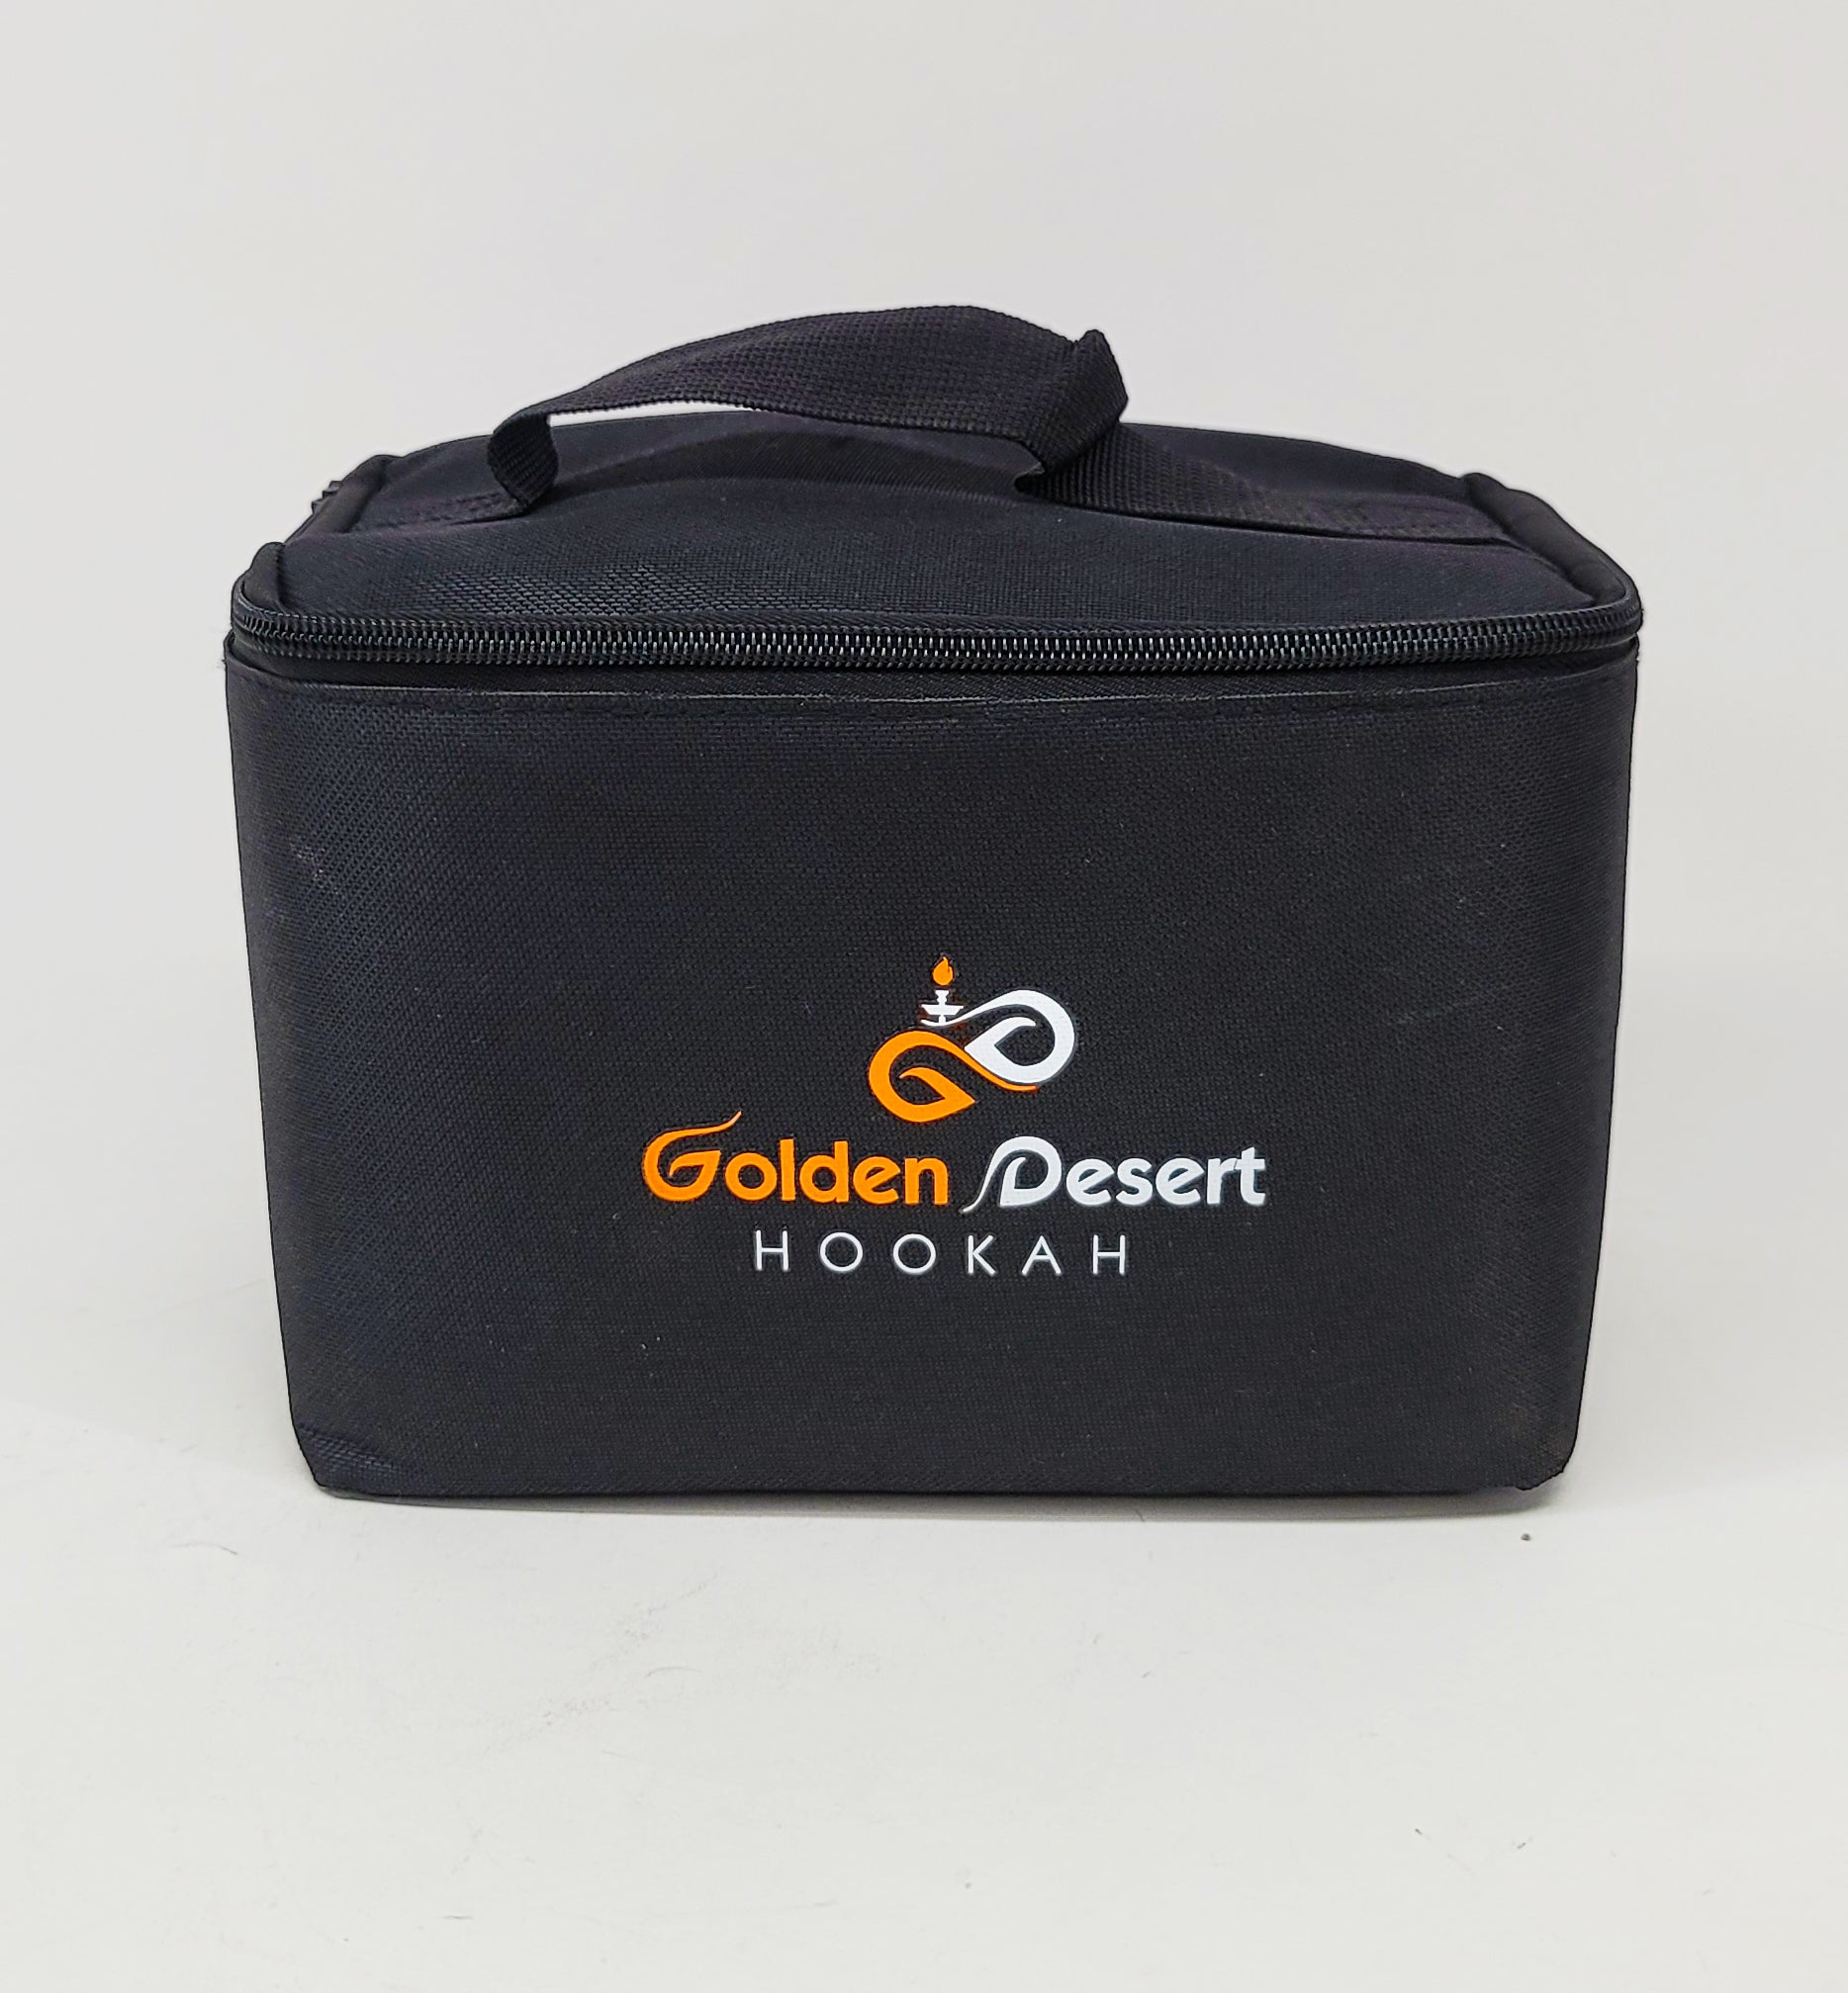 Golden desert carry on bag 